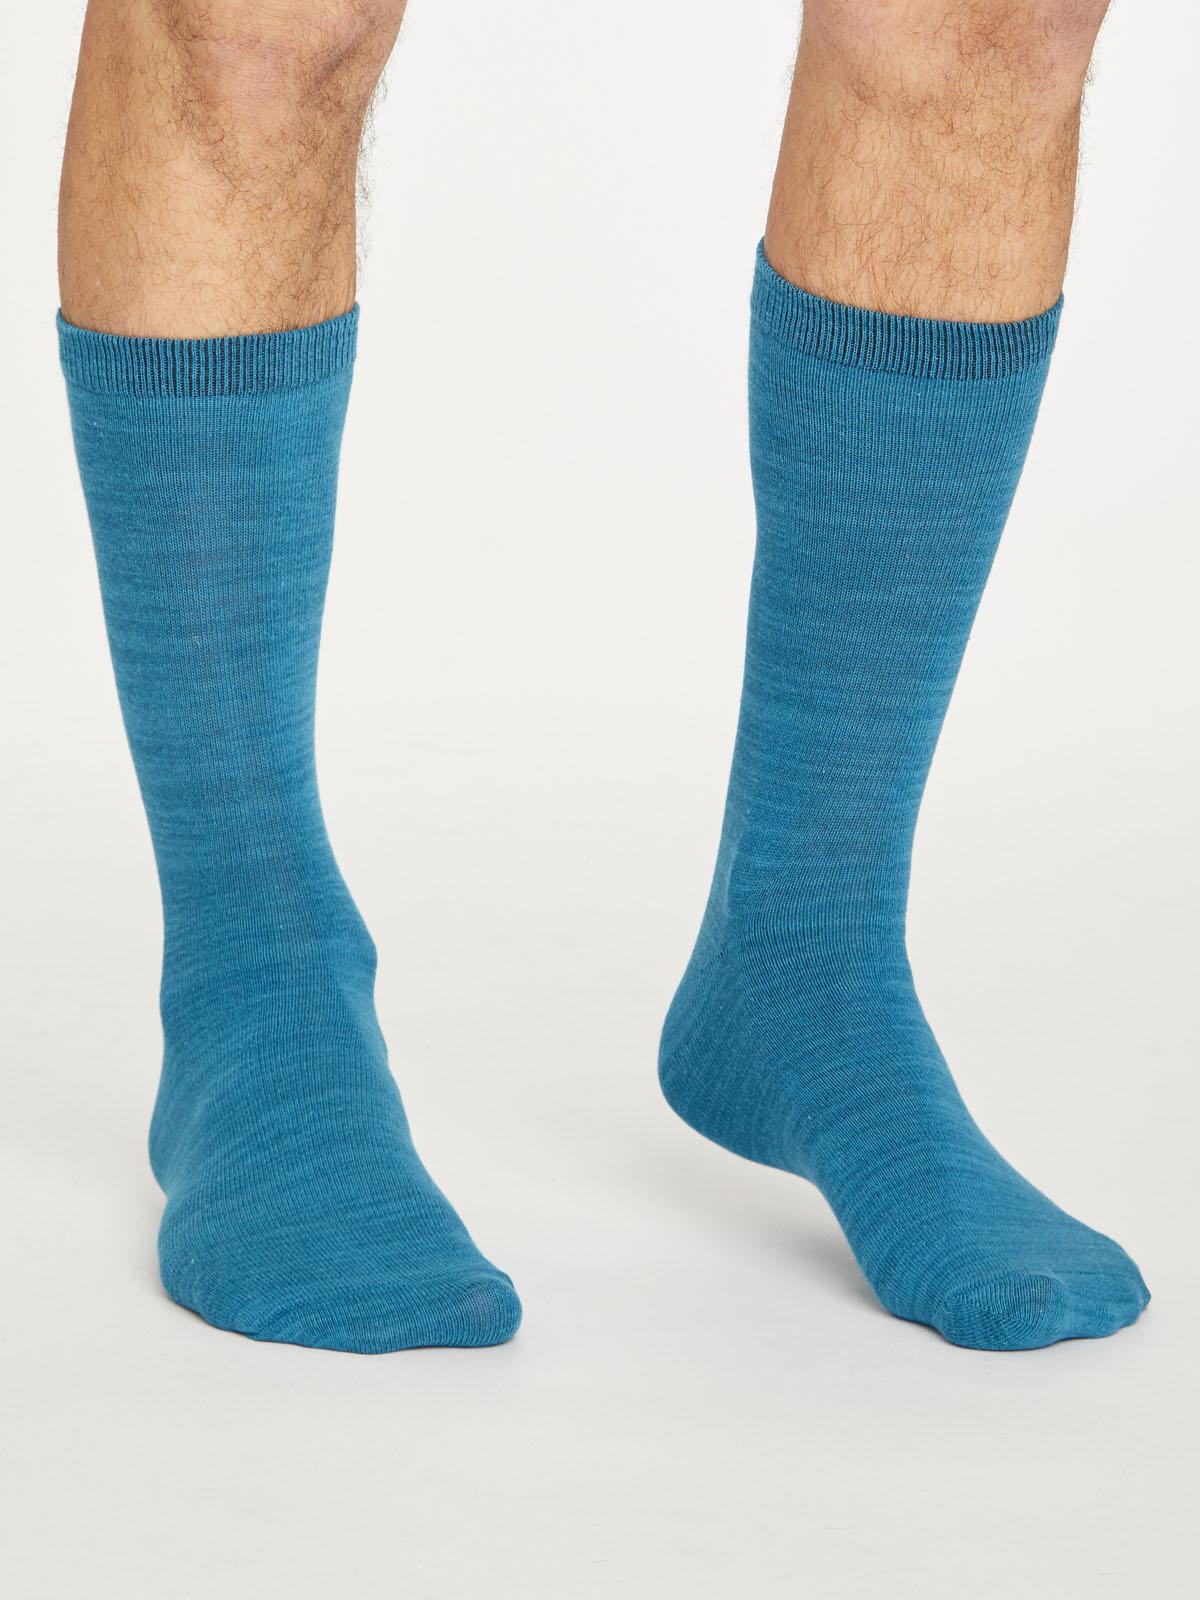 Lisket Organic Cotton Socks - Ink Blue - Thought Clothing UK